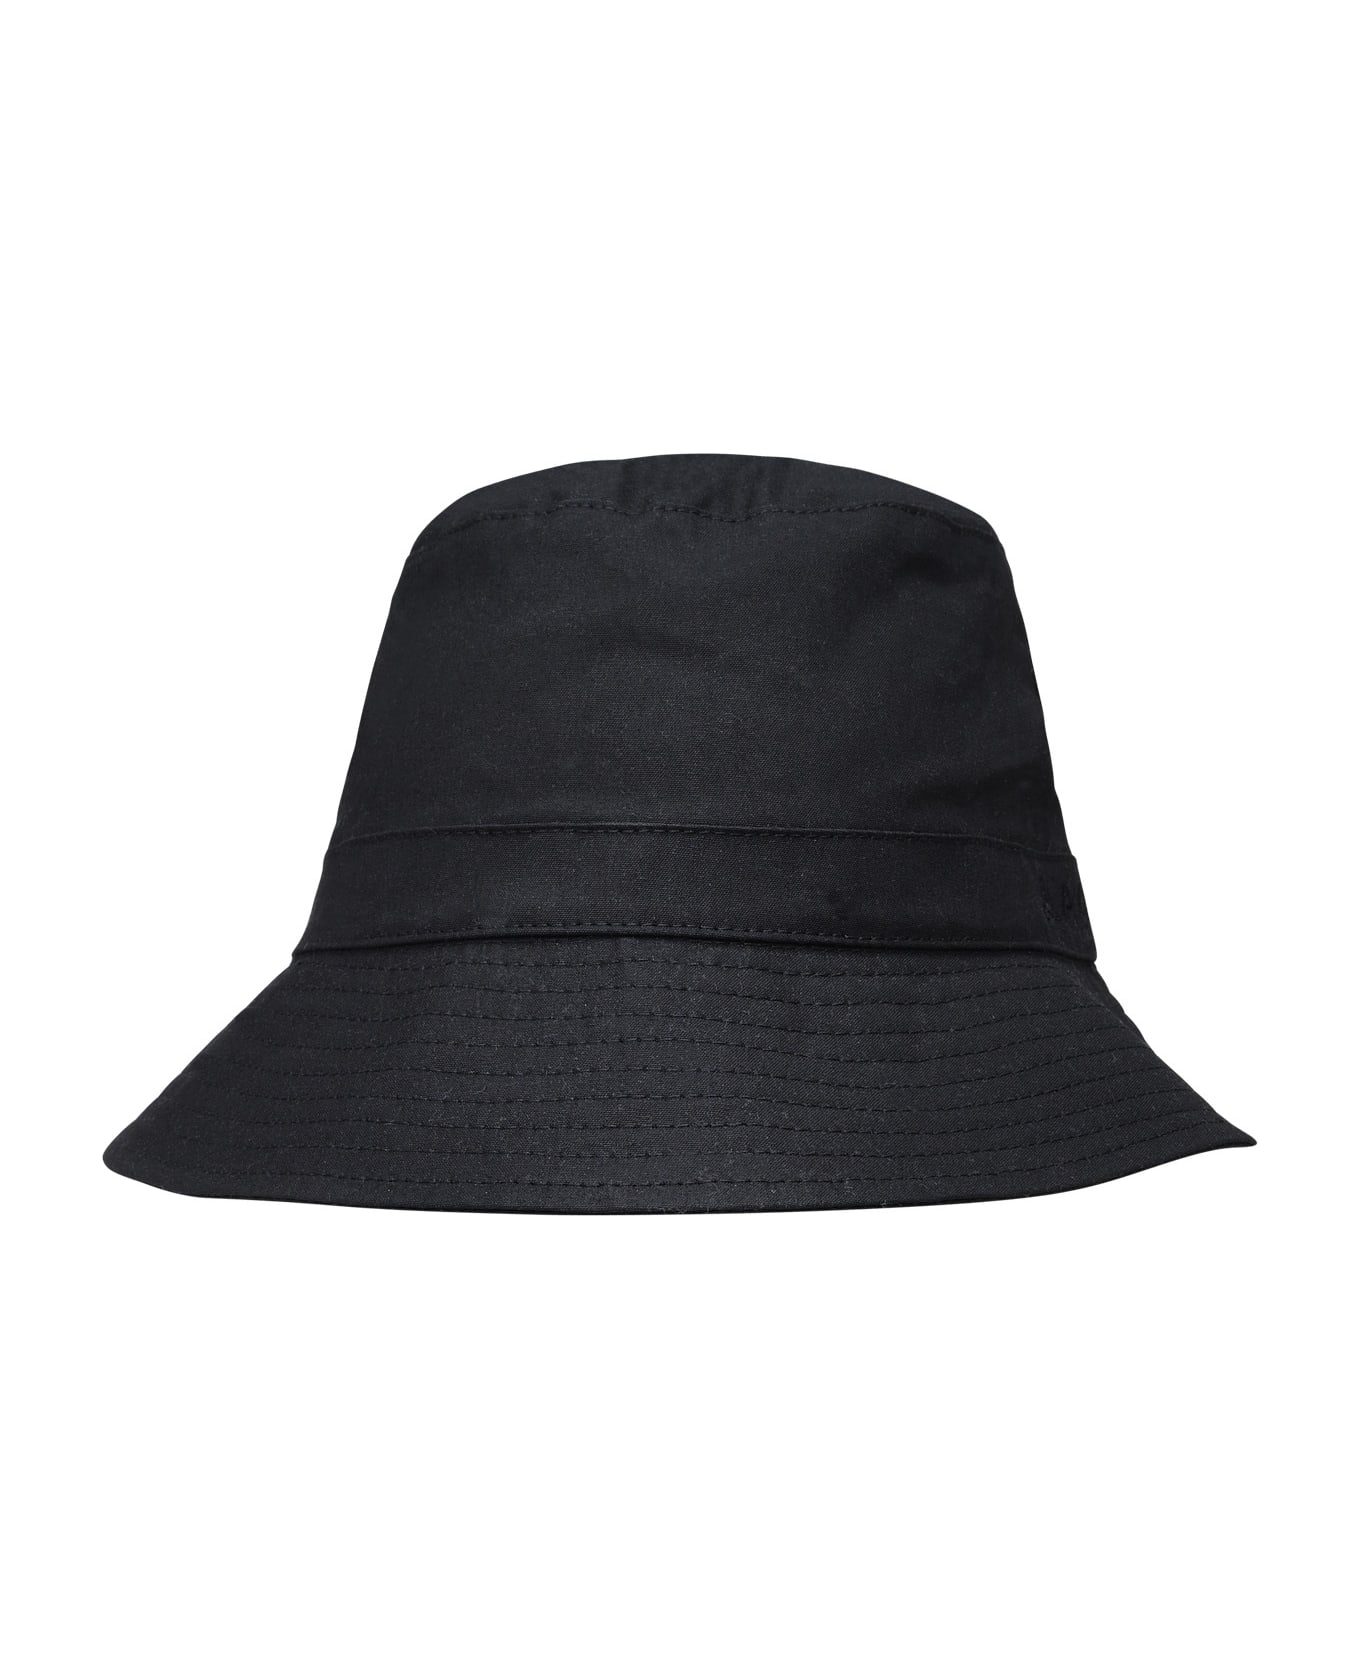 A.P.C. Bob Mark - Black 帽子